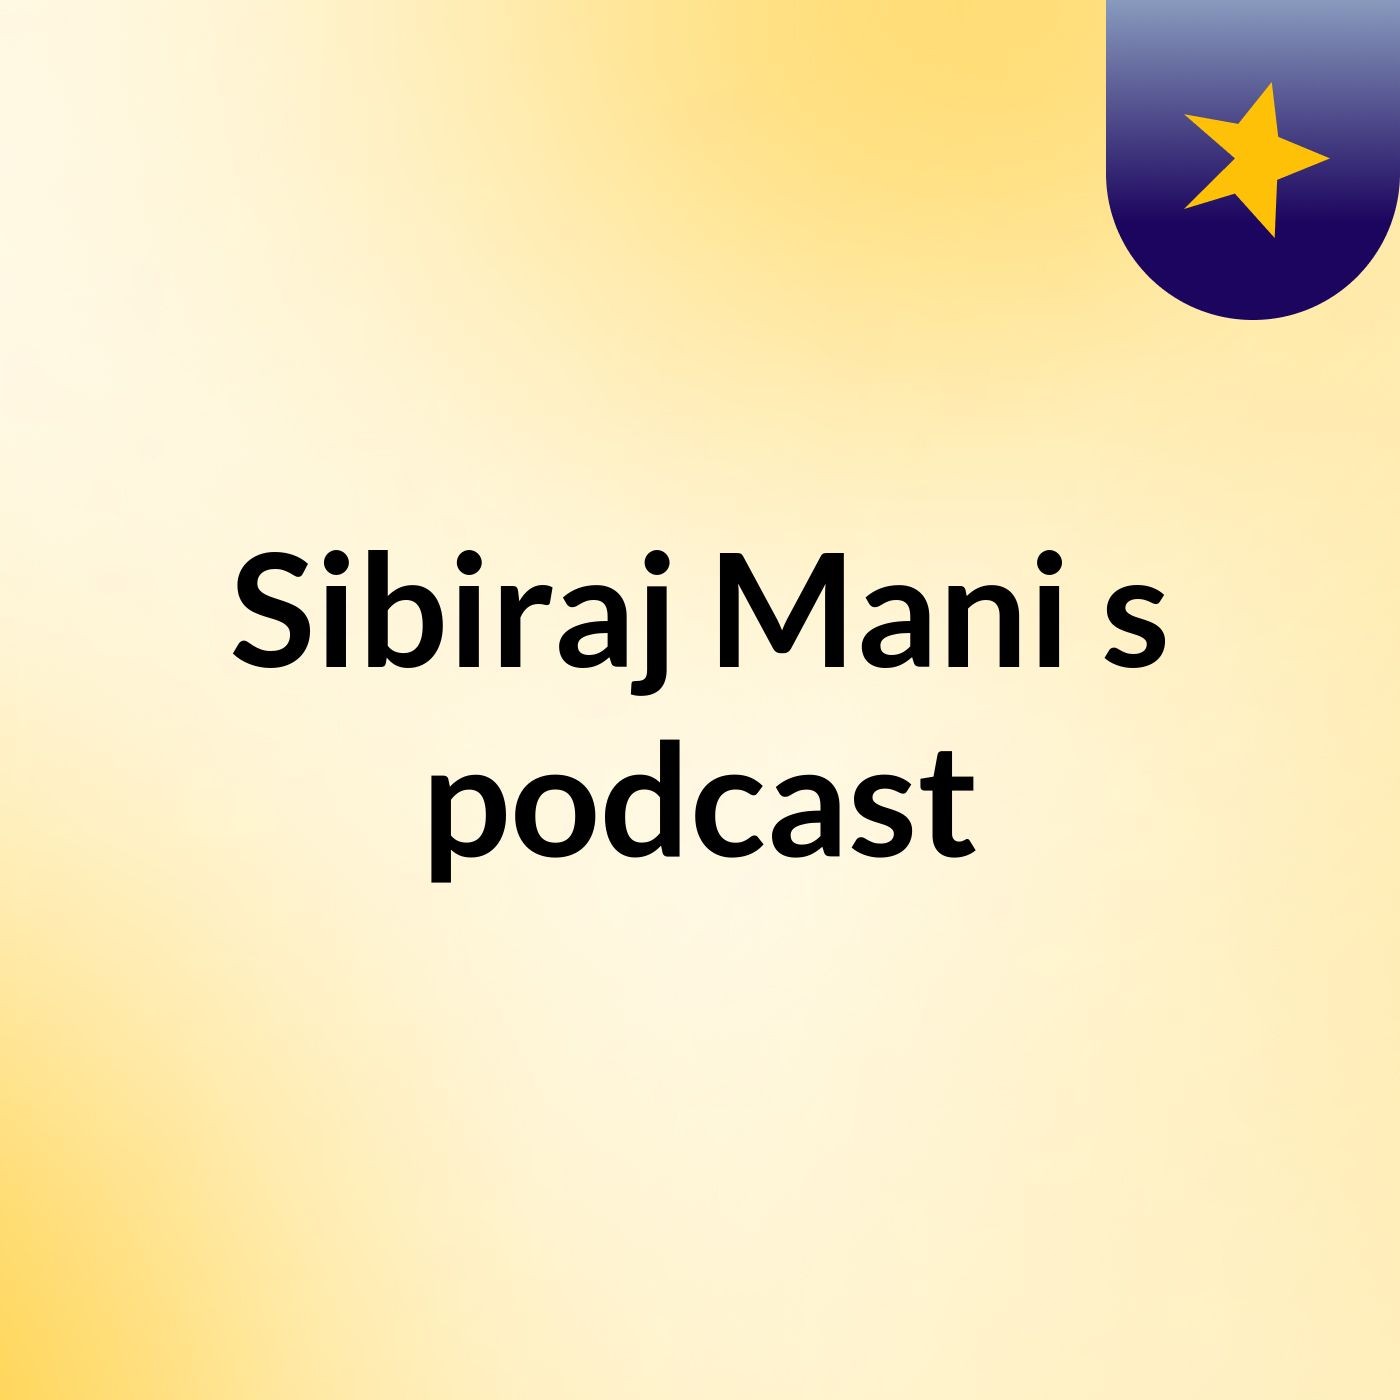 Episode 1 - Sibiraj Mani's podcast